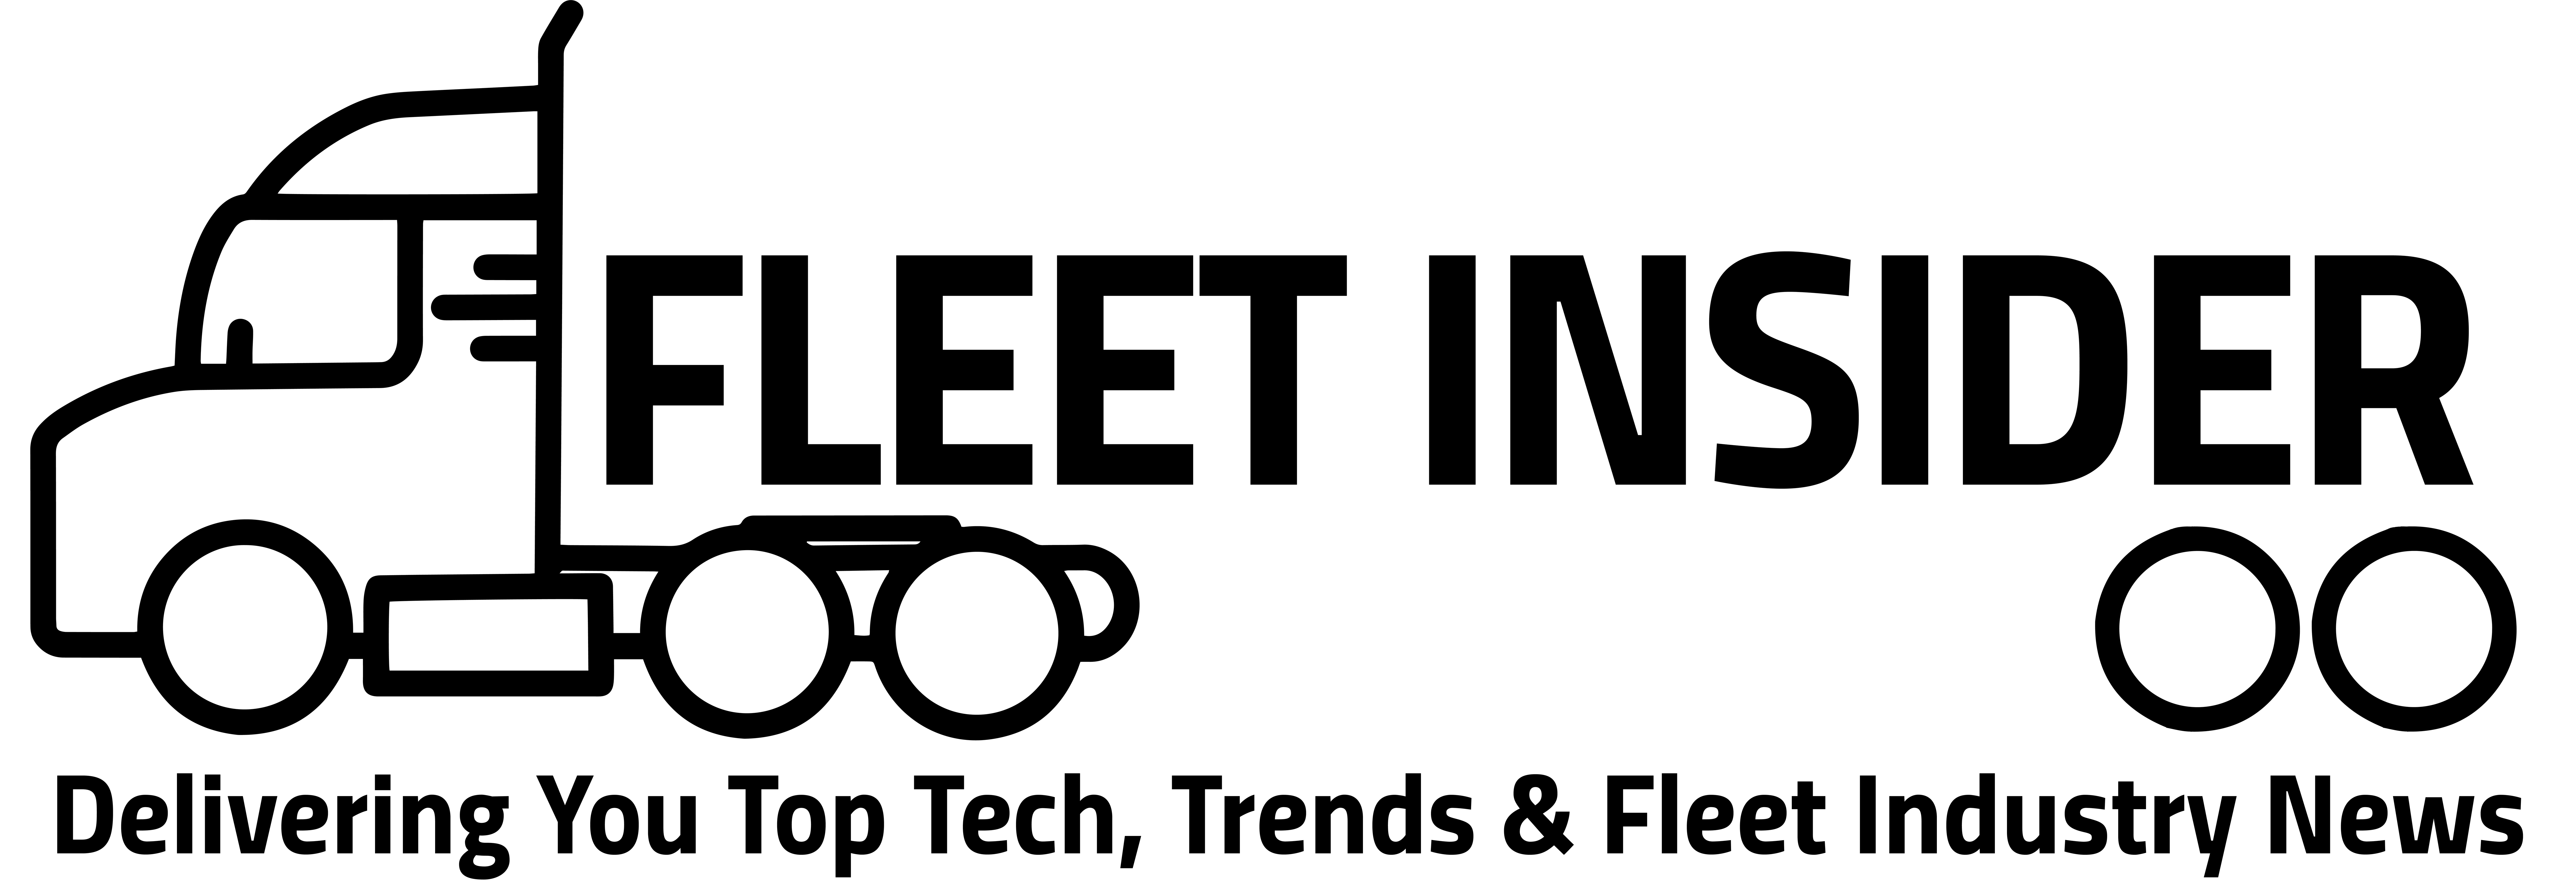 fleet insider newsletter logo